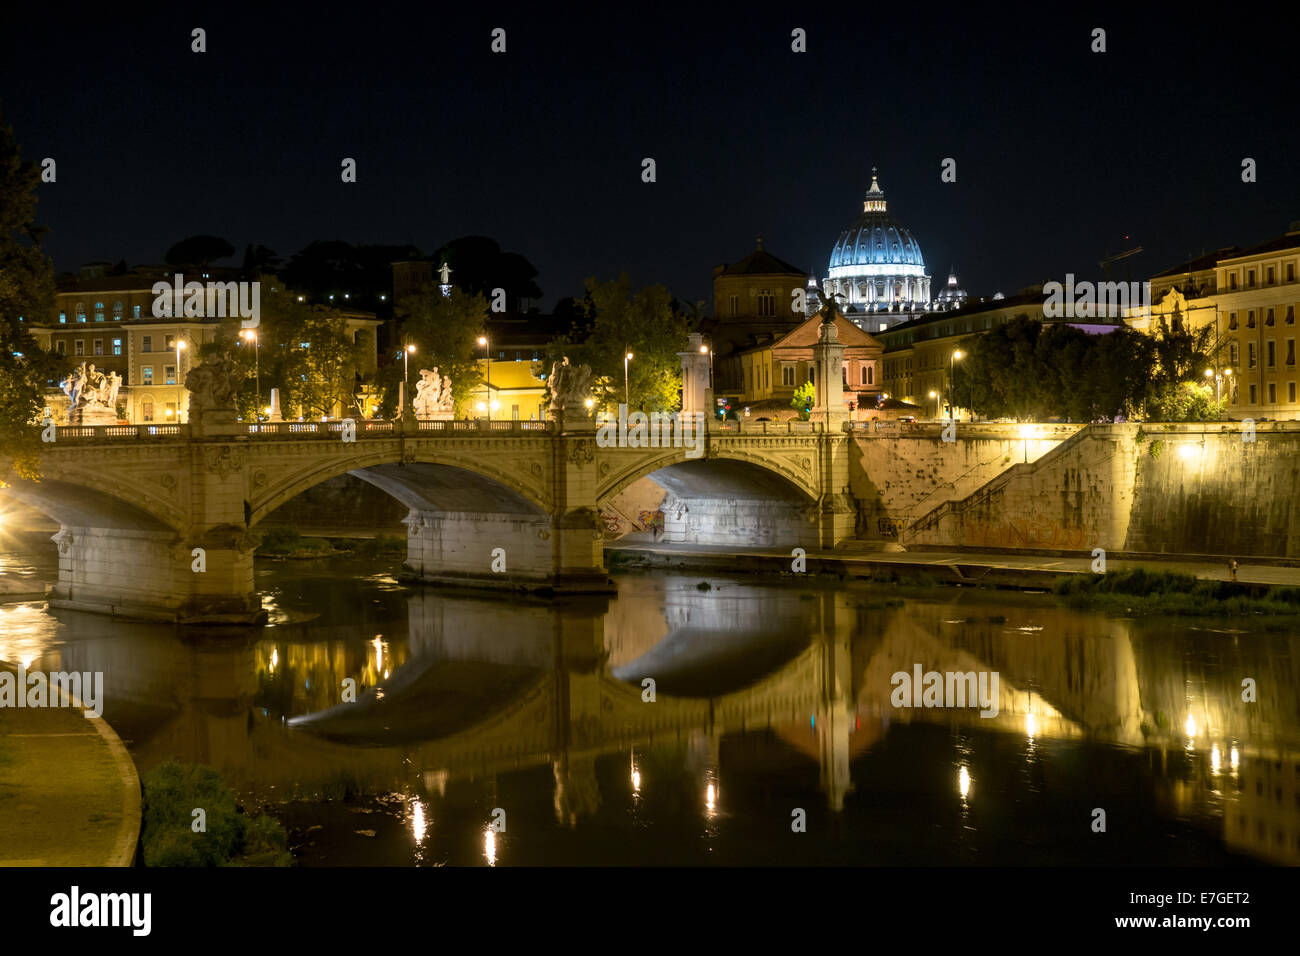 Italia: Fiume Tevere e sulla Basilica di San Pietro (a destra) durante la notte. Foto dal 5 settembre 2014. Foto Stock